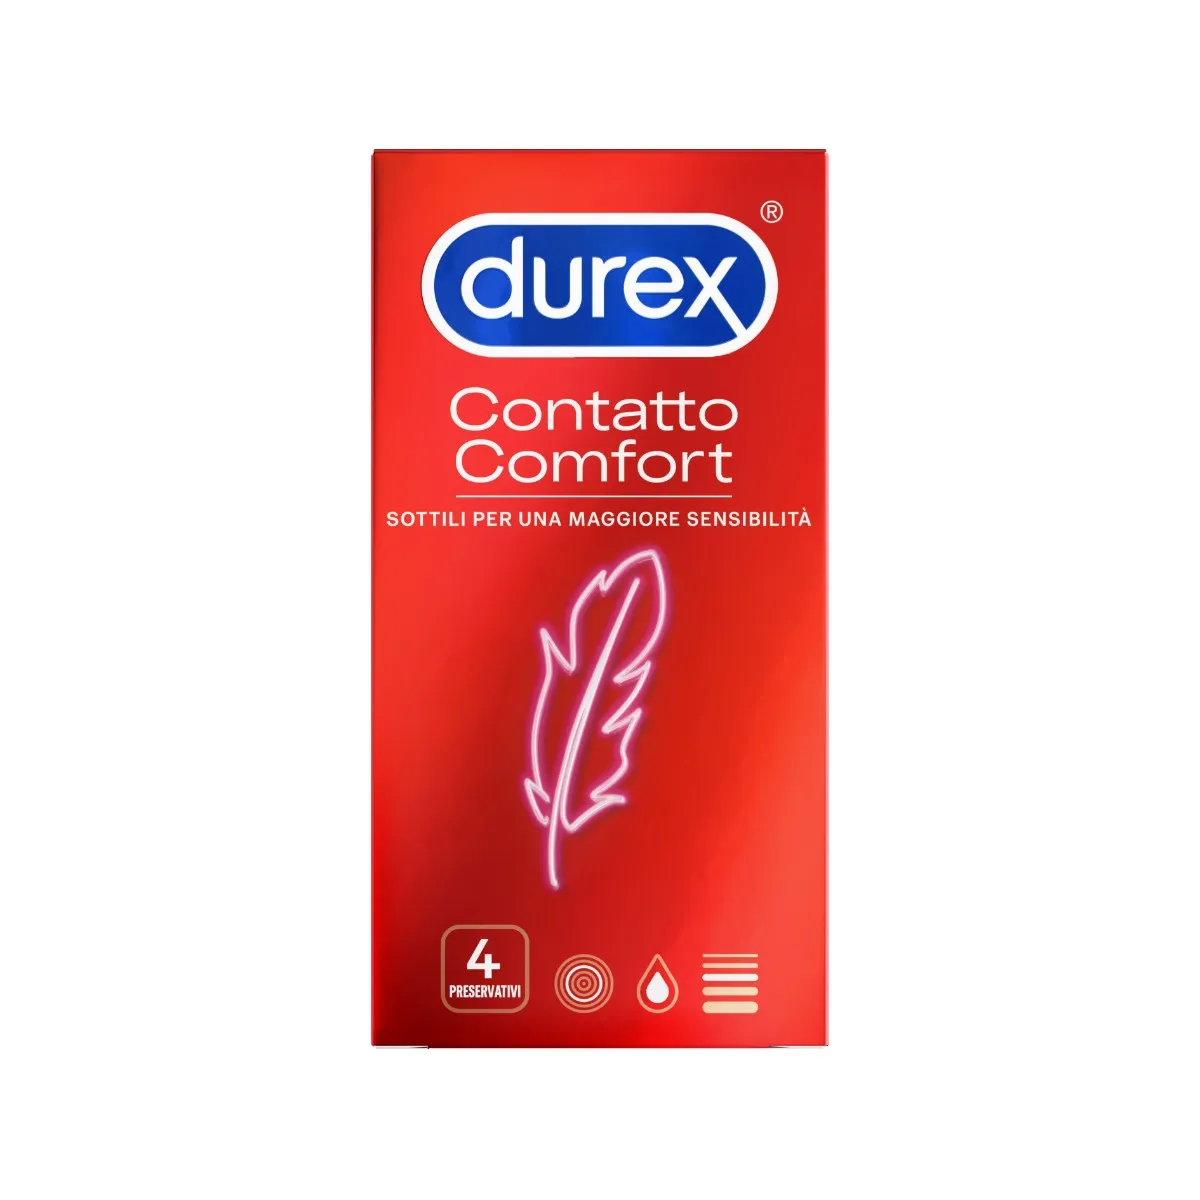 Durex Contatto Comfort Profilattici Sottili 4 Pezzi Elevata Lubrificazione